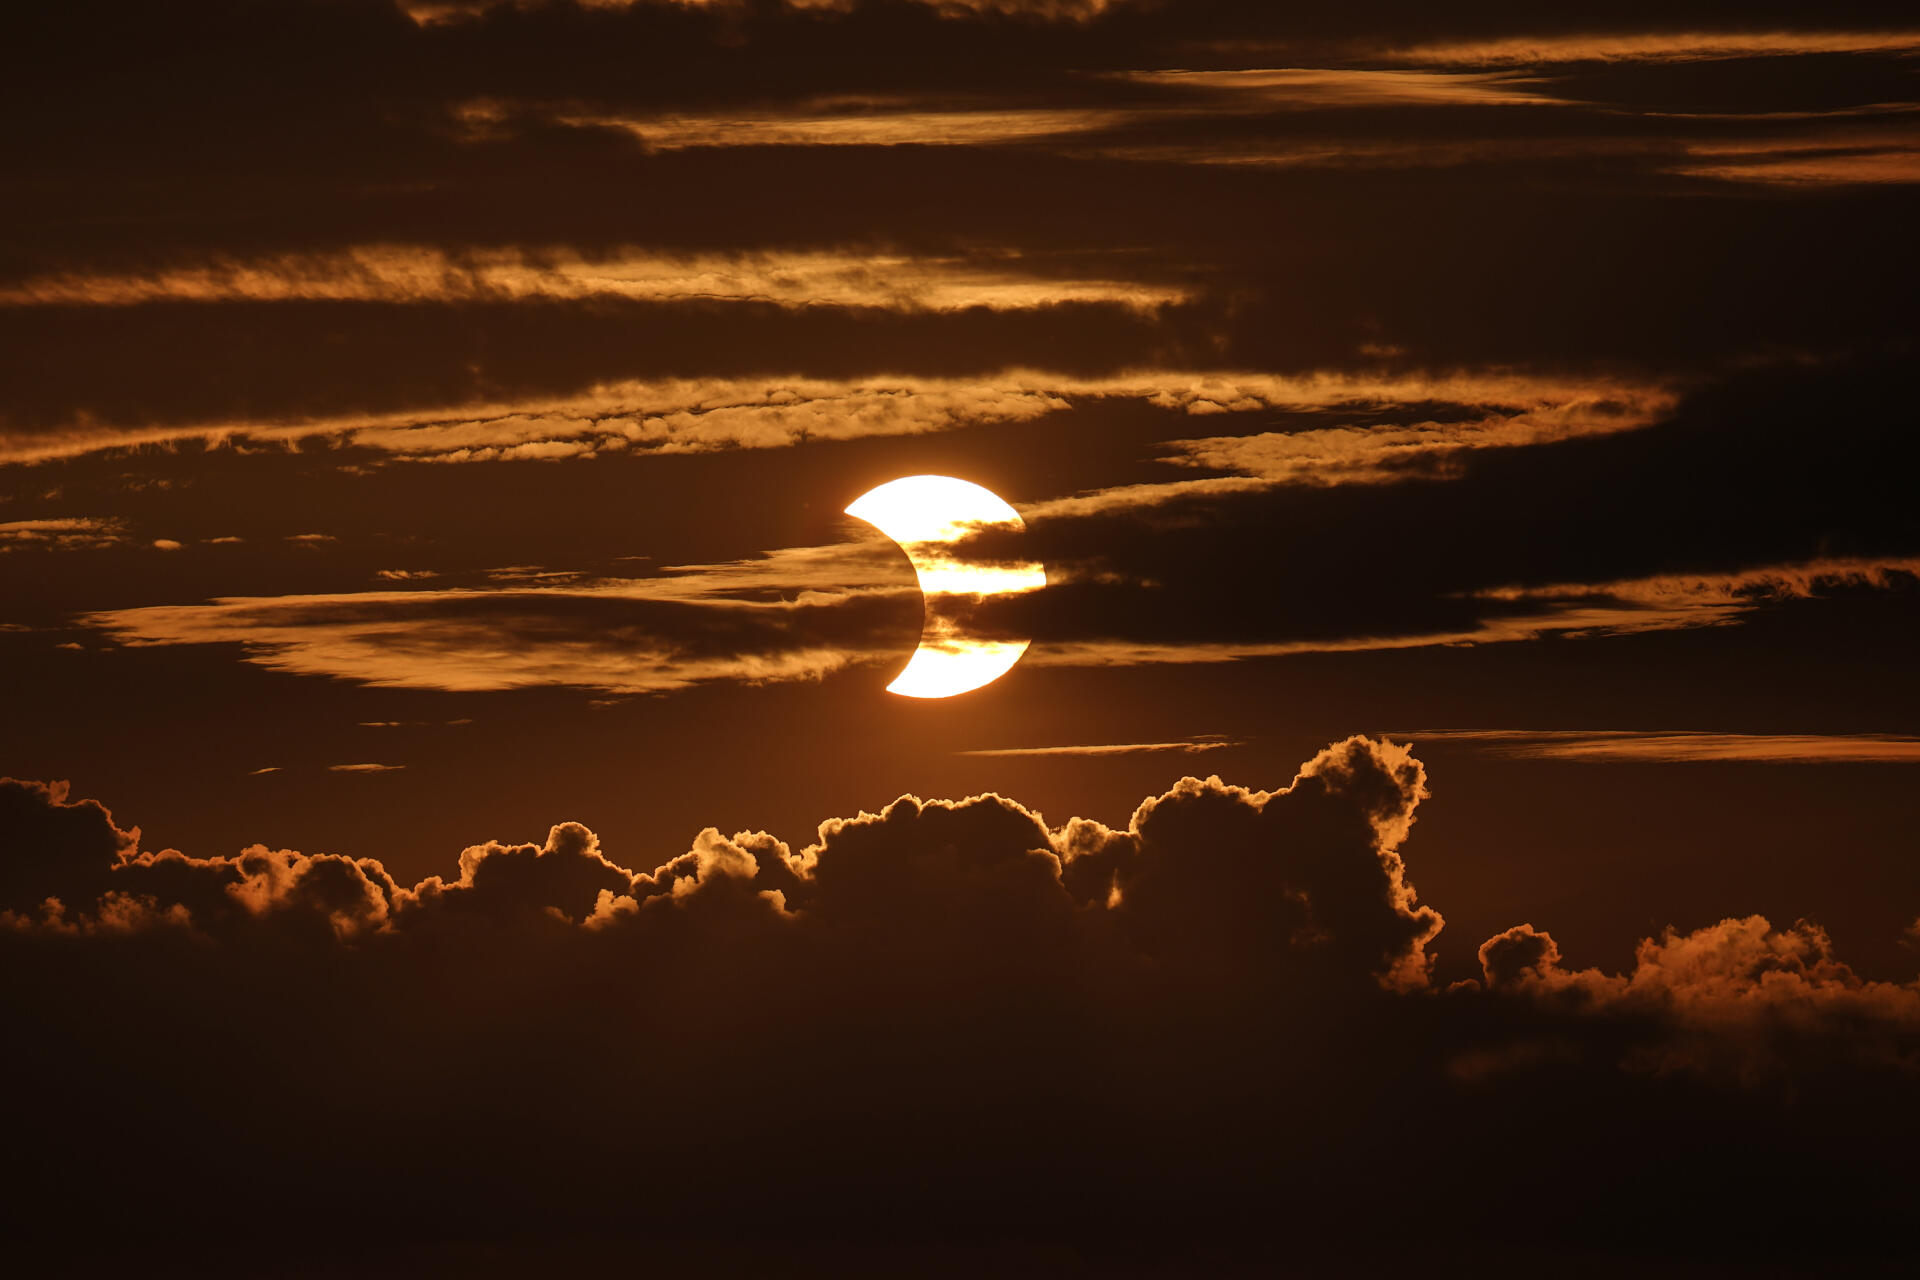 L’éclipse partielle de soleil vue depuis Arbutus, dans le Maryland aux Etats-Unis, le 10 juin 2021.